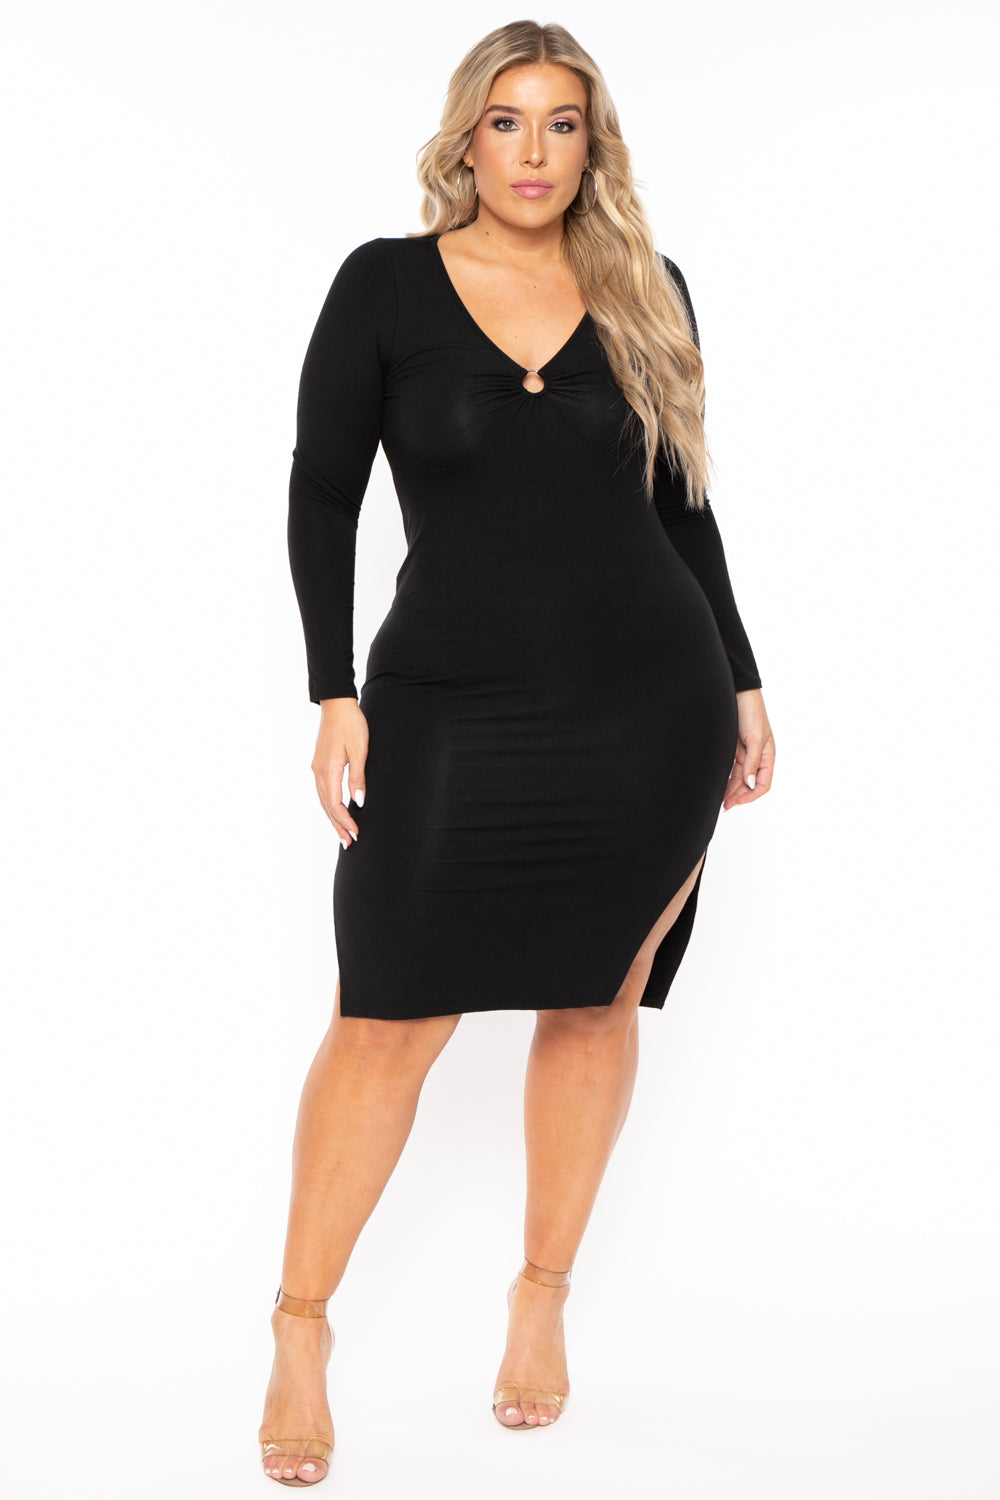 Curvy Sense Dresses 1X / Black Plus Size Niela Midi Dress - Black